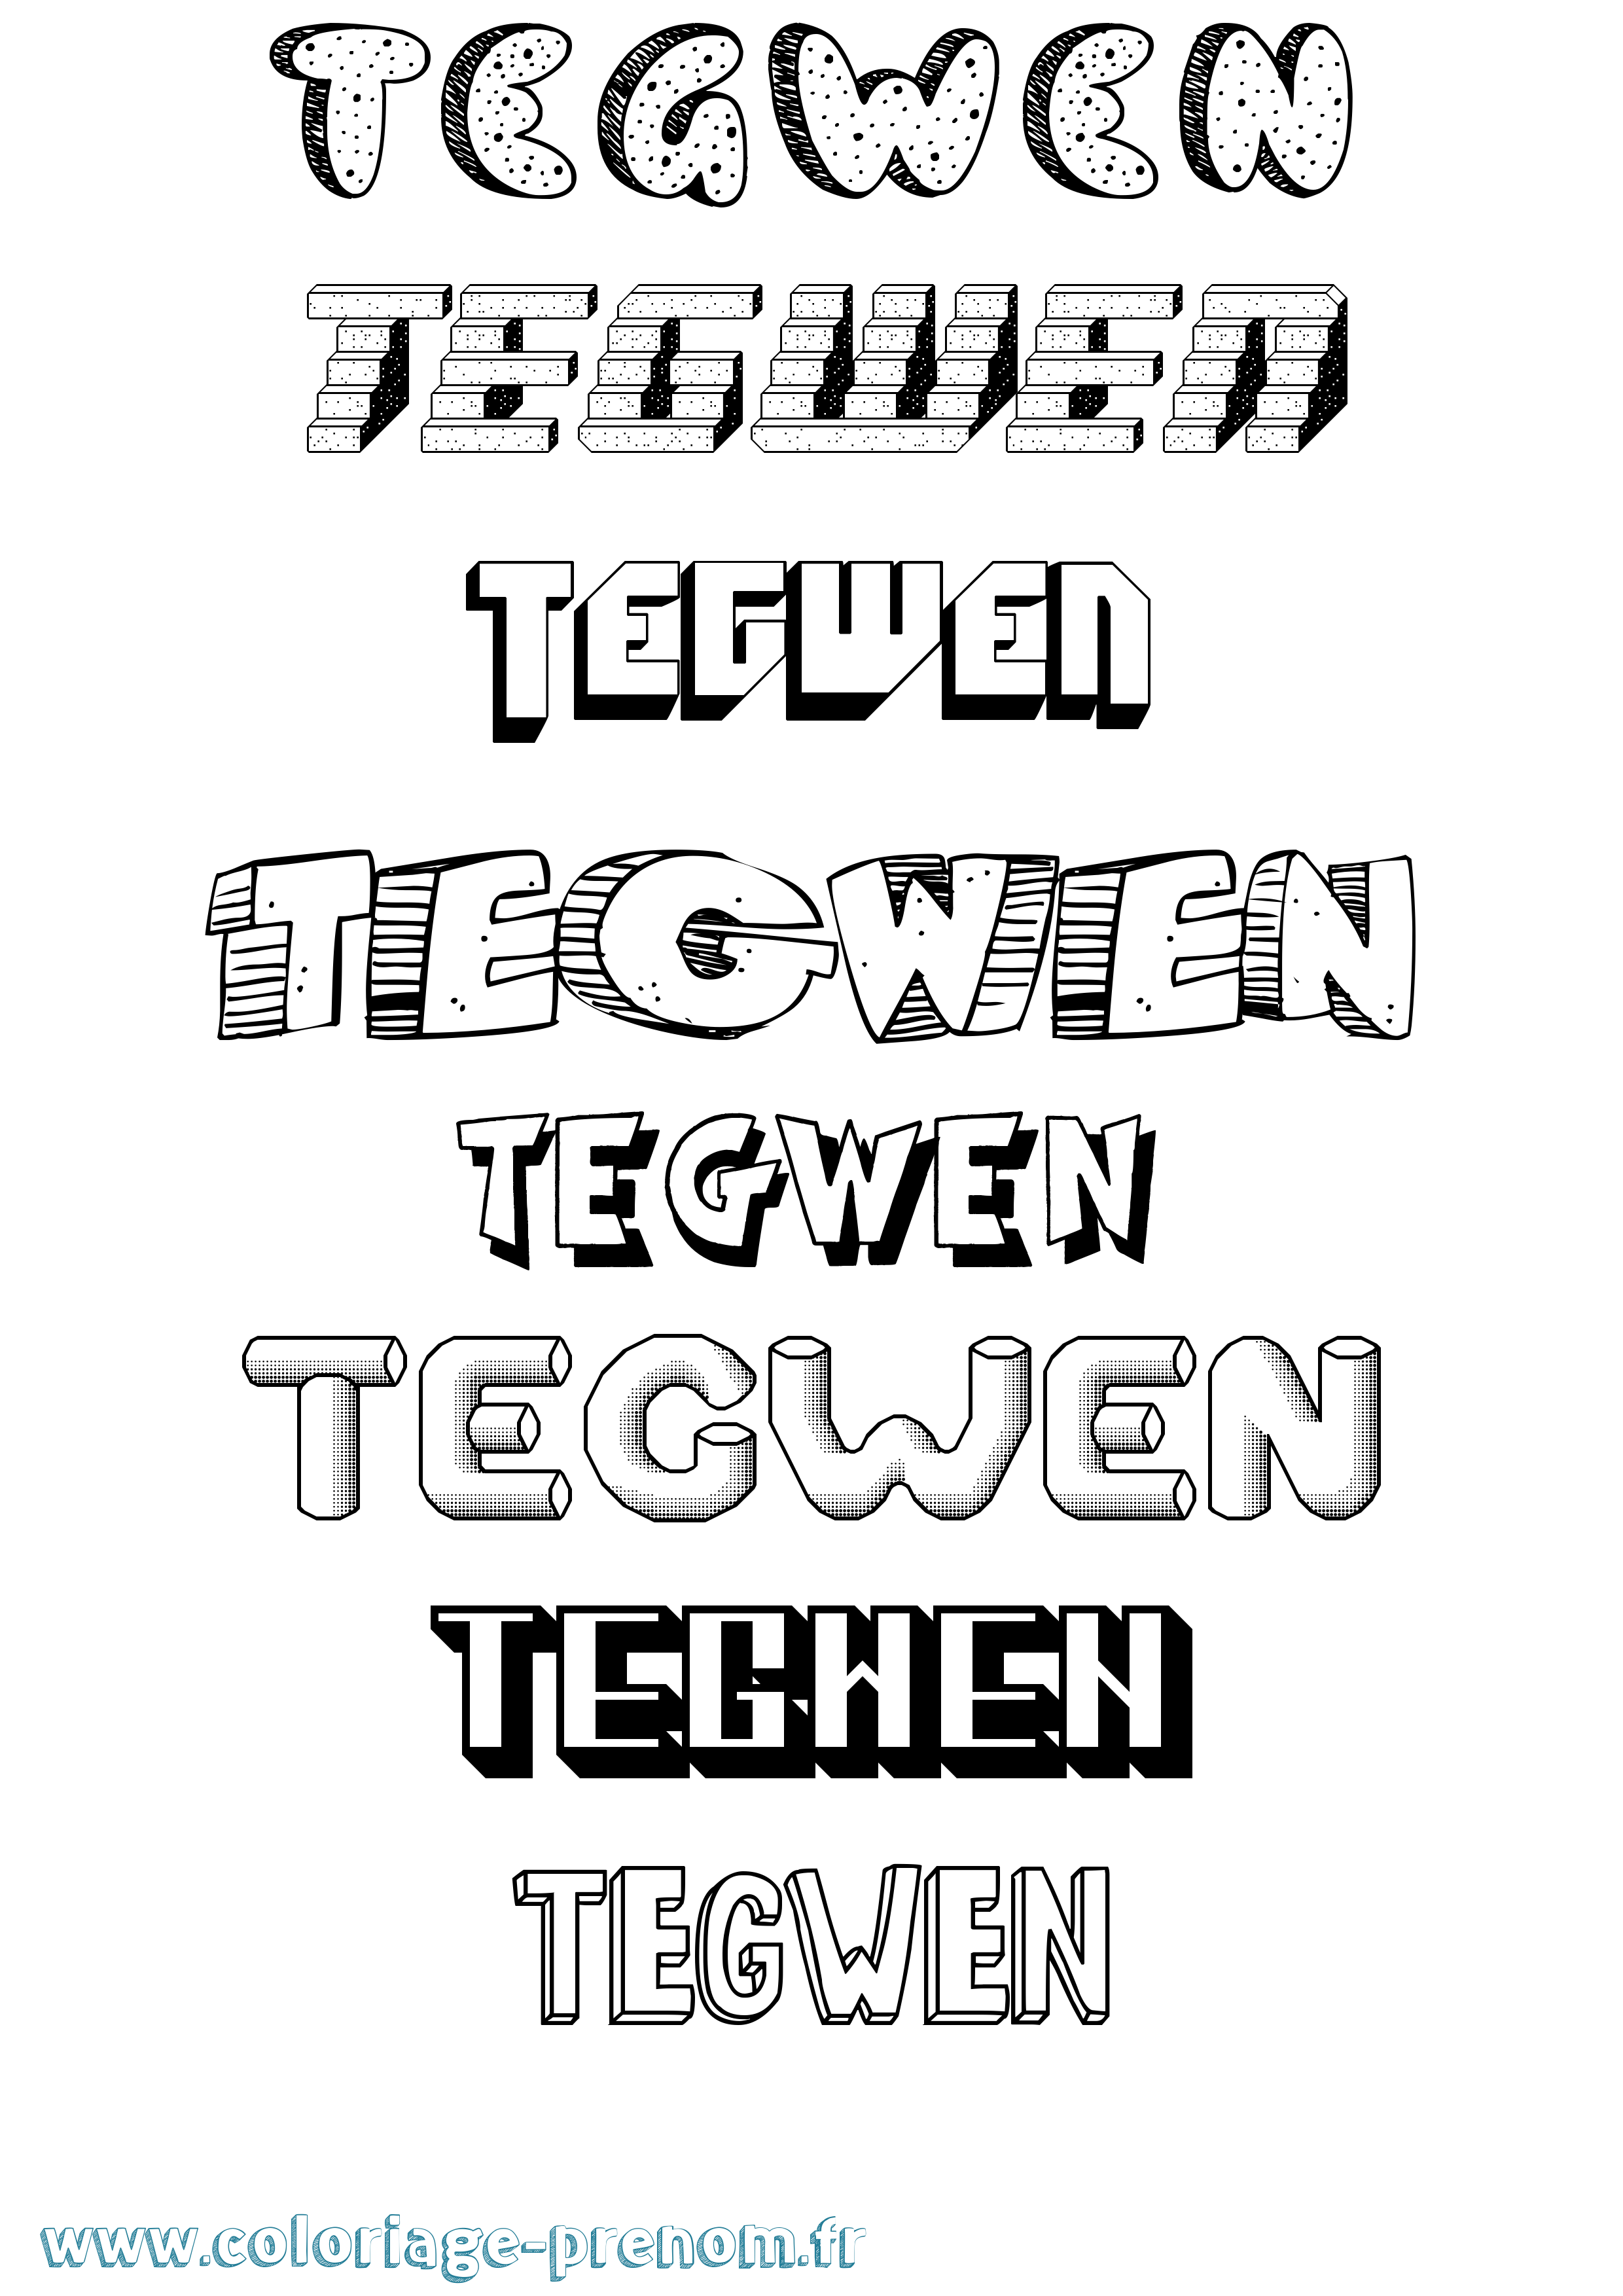 Coloriage prénom Tegwen Effet 3D